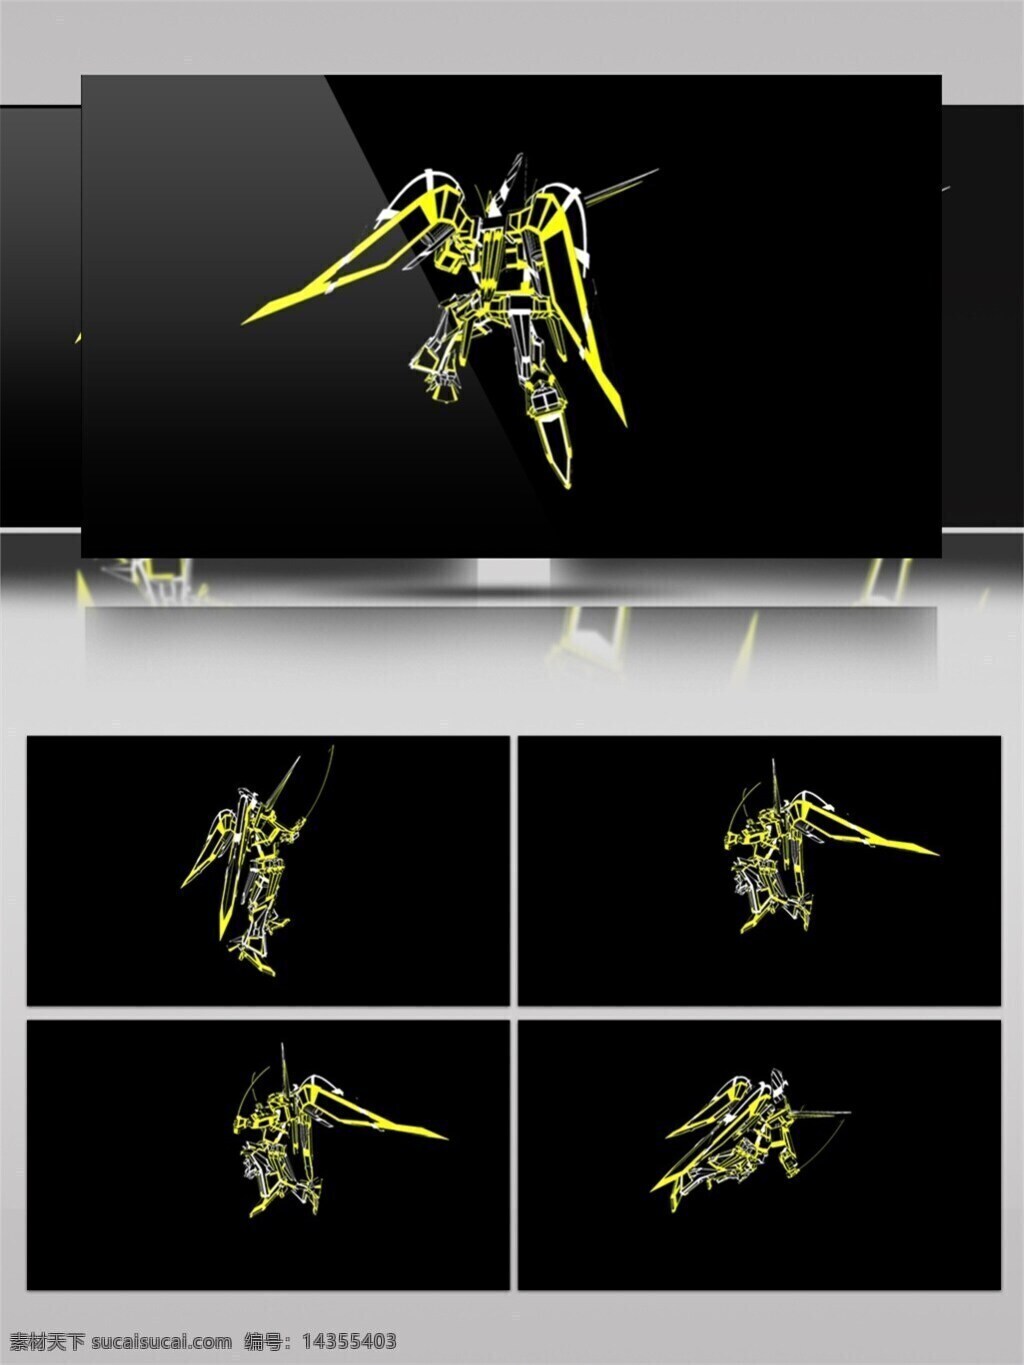 人物 动画 展示 视频 科技 影视后期 视频素材 动态视频素材 动画模型 vj线条